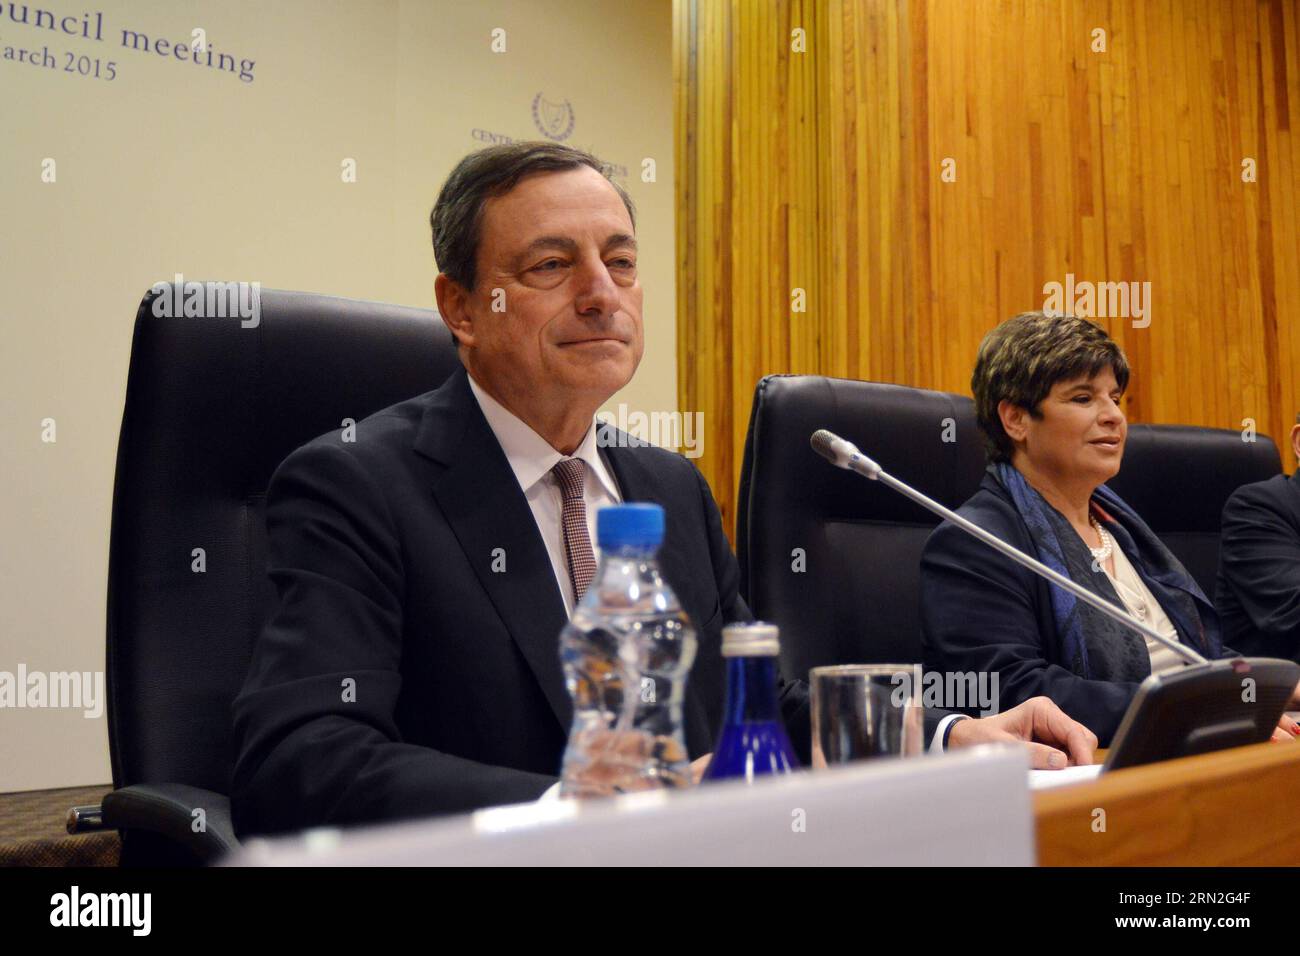 NICOSIA, 5. März 2015 -- der Präsident der Europäischen Zentralbank (EZB) Mario Draghi (L) spricht auf der Pressekonferenz nach einer Sitzung des EZB-Rats in der zyprischen Hauptstadt Nicosia, 5. März 2015. Die EZB sagte am Donnerstag, dass ihr quantitatives Easing-Programm (QE) am 9. März beginnen wird. (Zjy) ZYPERN-NICOSIA-EZB-QE StefanosxKouratzis PUBLICATIONxNOTxINxCHN Nicosia 5. März 2015 der EZB-Präsident der Europäischen Zentralbank Mario Draghi l sprach AUF der Pressekonferenz nach einer Sitzung des EZB-Rats in der zyprischen Hauptstadt Nikosia AM 5. März 2015 sagte die EZB AM Donnerstag Thatcher IT Stockfoto